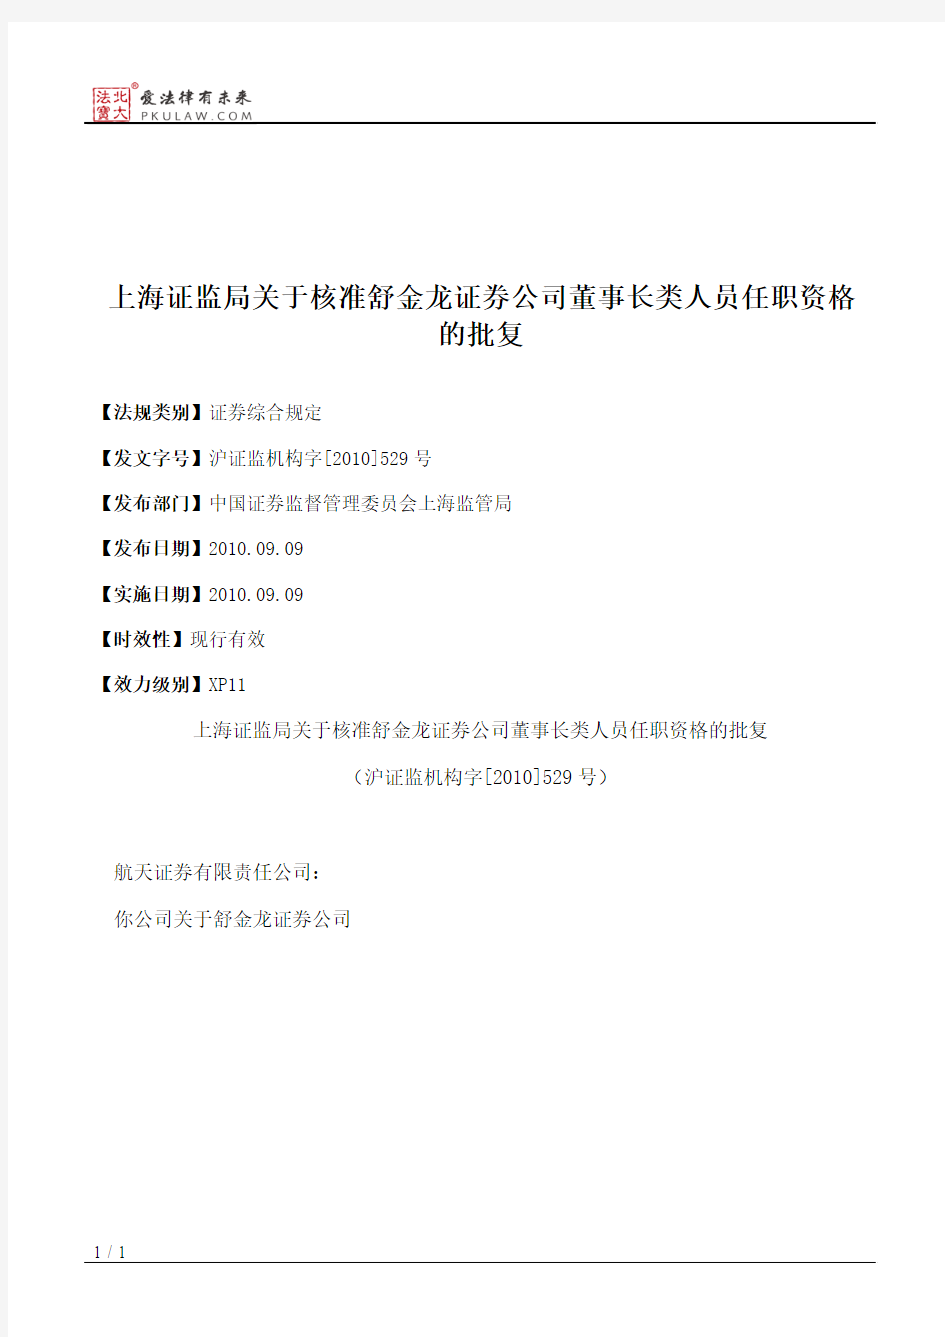 上海证监局关于核准舒金龙证券公司董事长类人员任职资格的批复